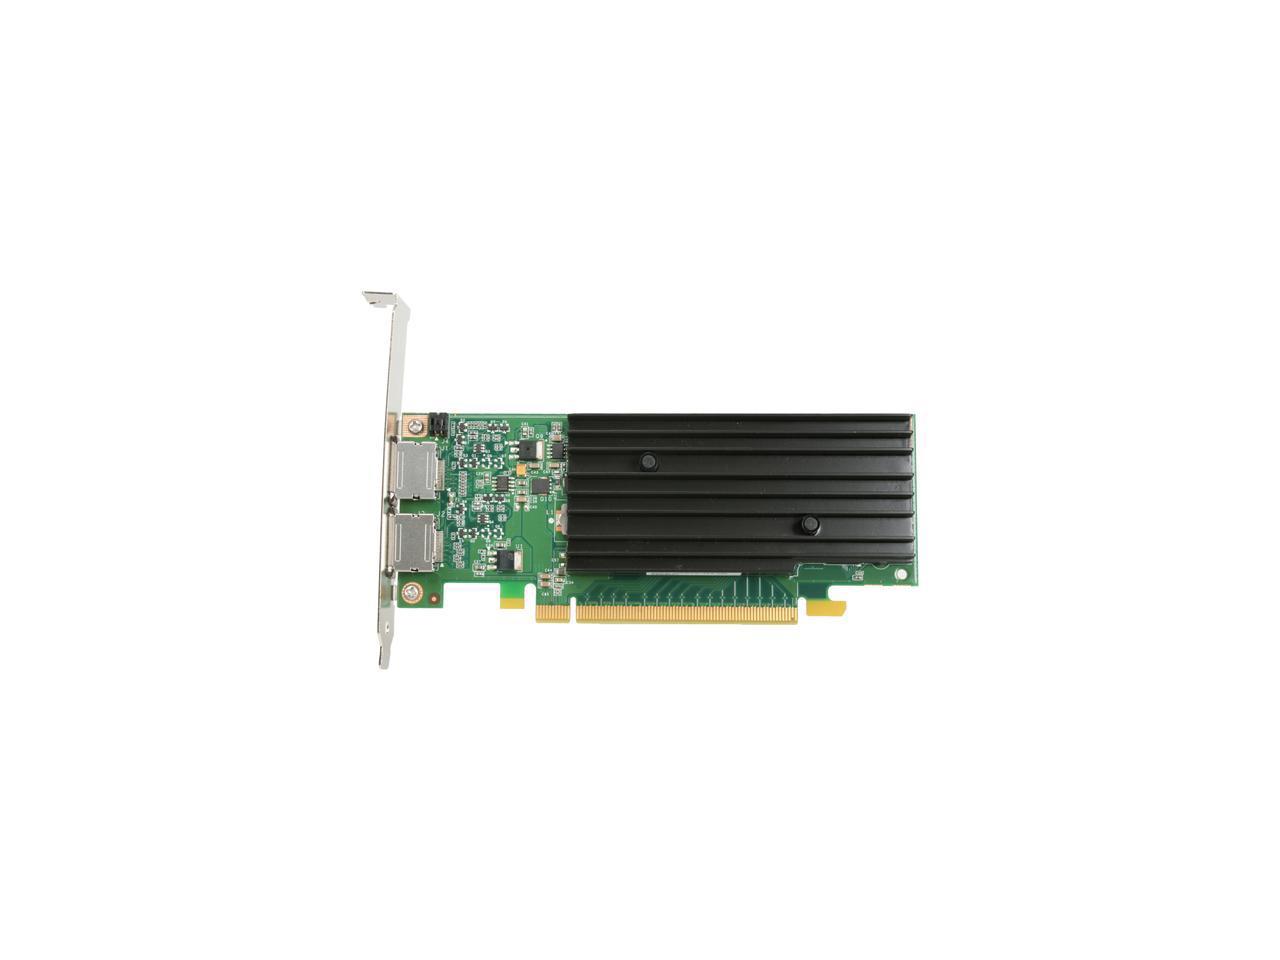 PNY Quadro NVS 295 VCQ295NVS-X16-DVI-PB 256MB 64-bit GDDR3 PCI